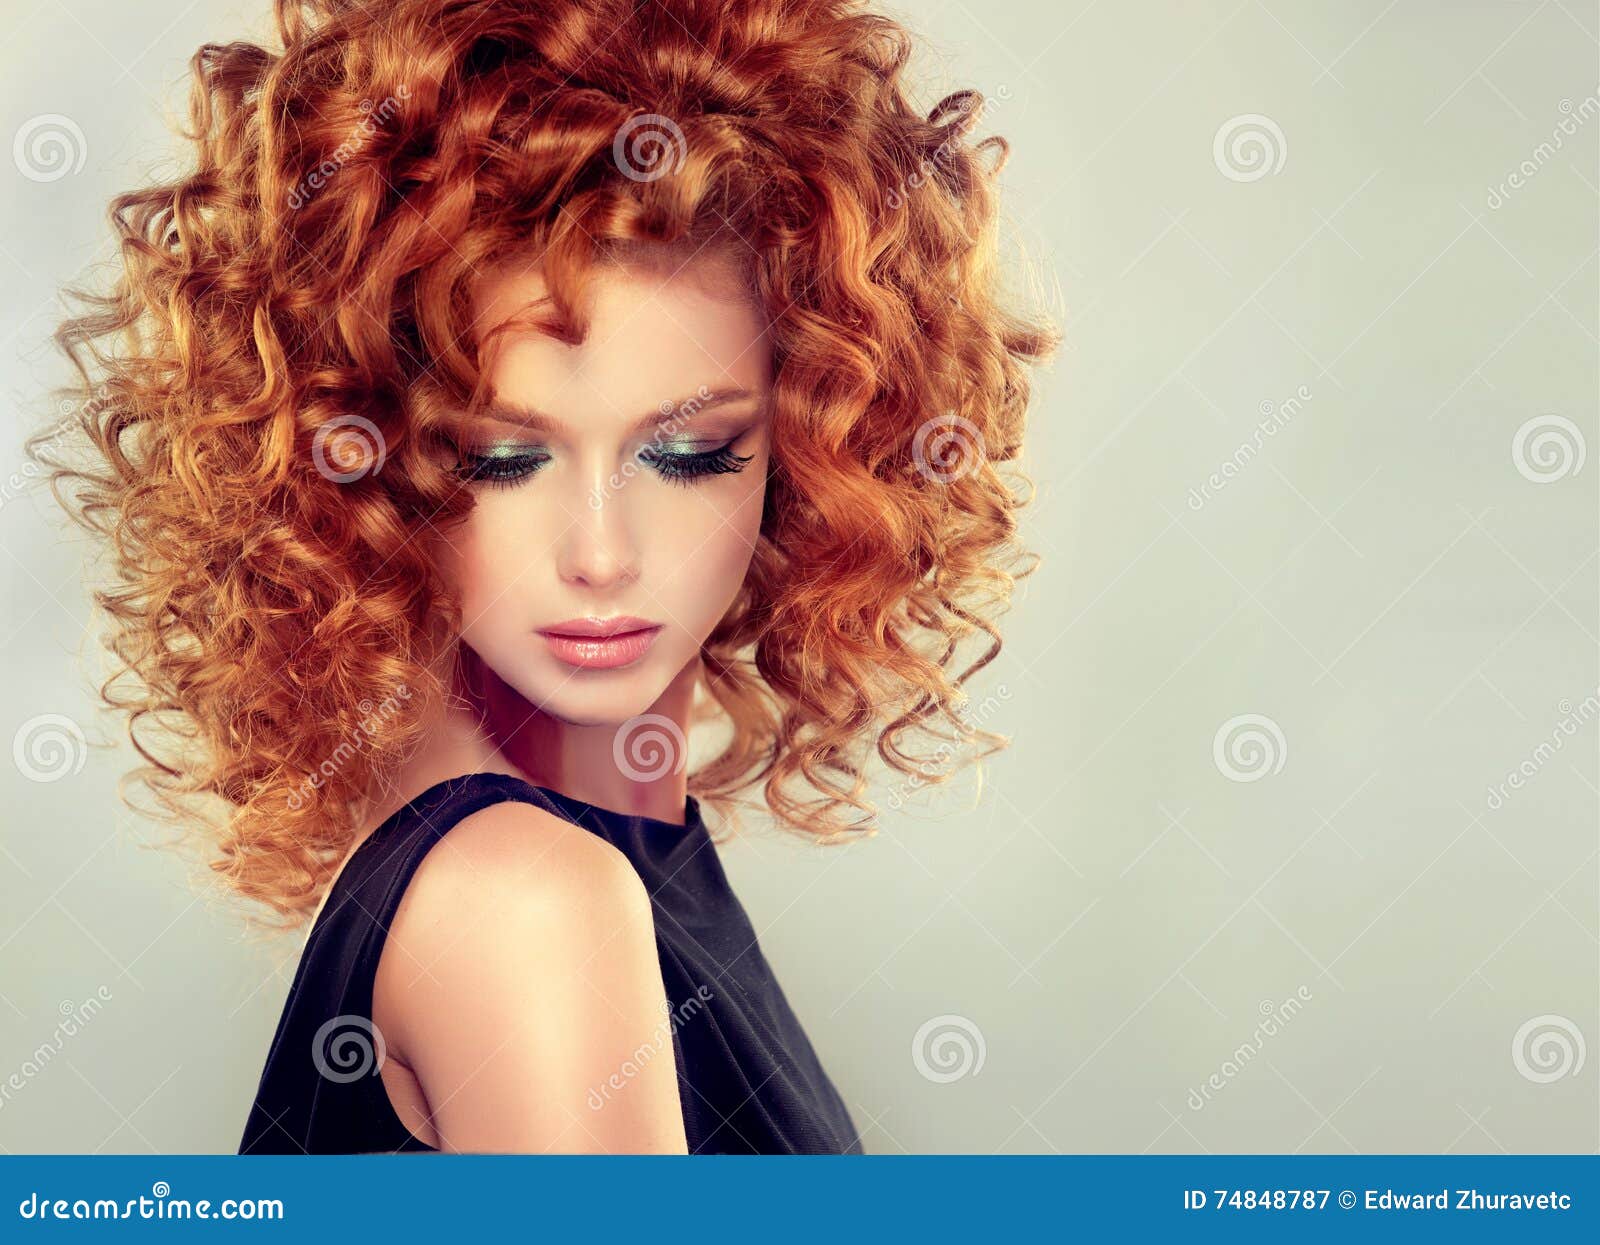 Transparant verstoring voor Rood Haired Meisje Met Krullend Kapsel Stock Afbeelding - Image of gezicht,  elegantie: 74848787